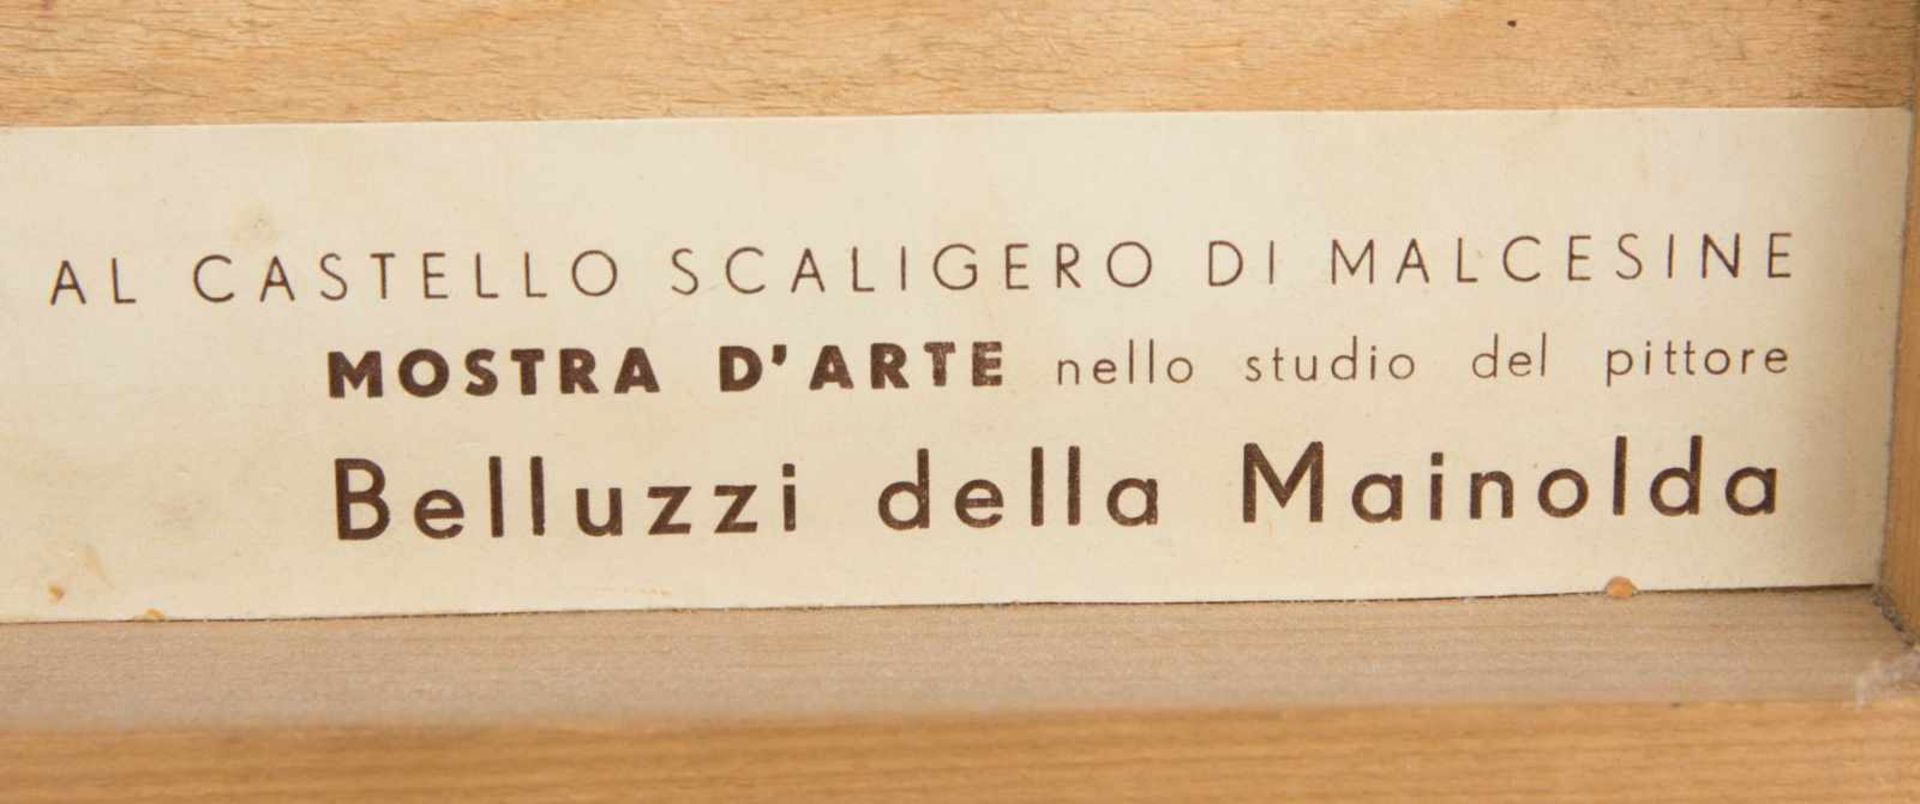 BELLUZZI DELLA MAINOLDA, Al Castello Scaligero di Malcesine, Öl auf Holz 1956< - Bild 4 aus 4